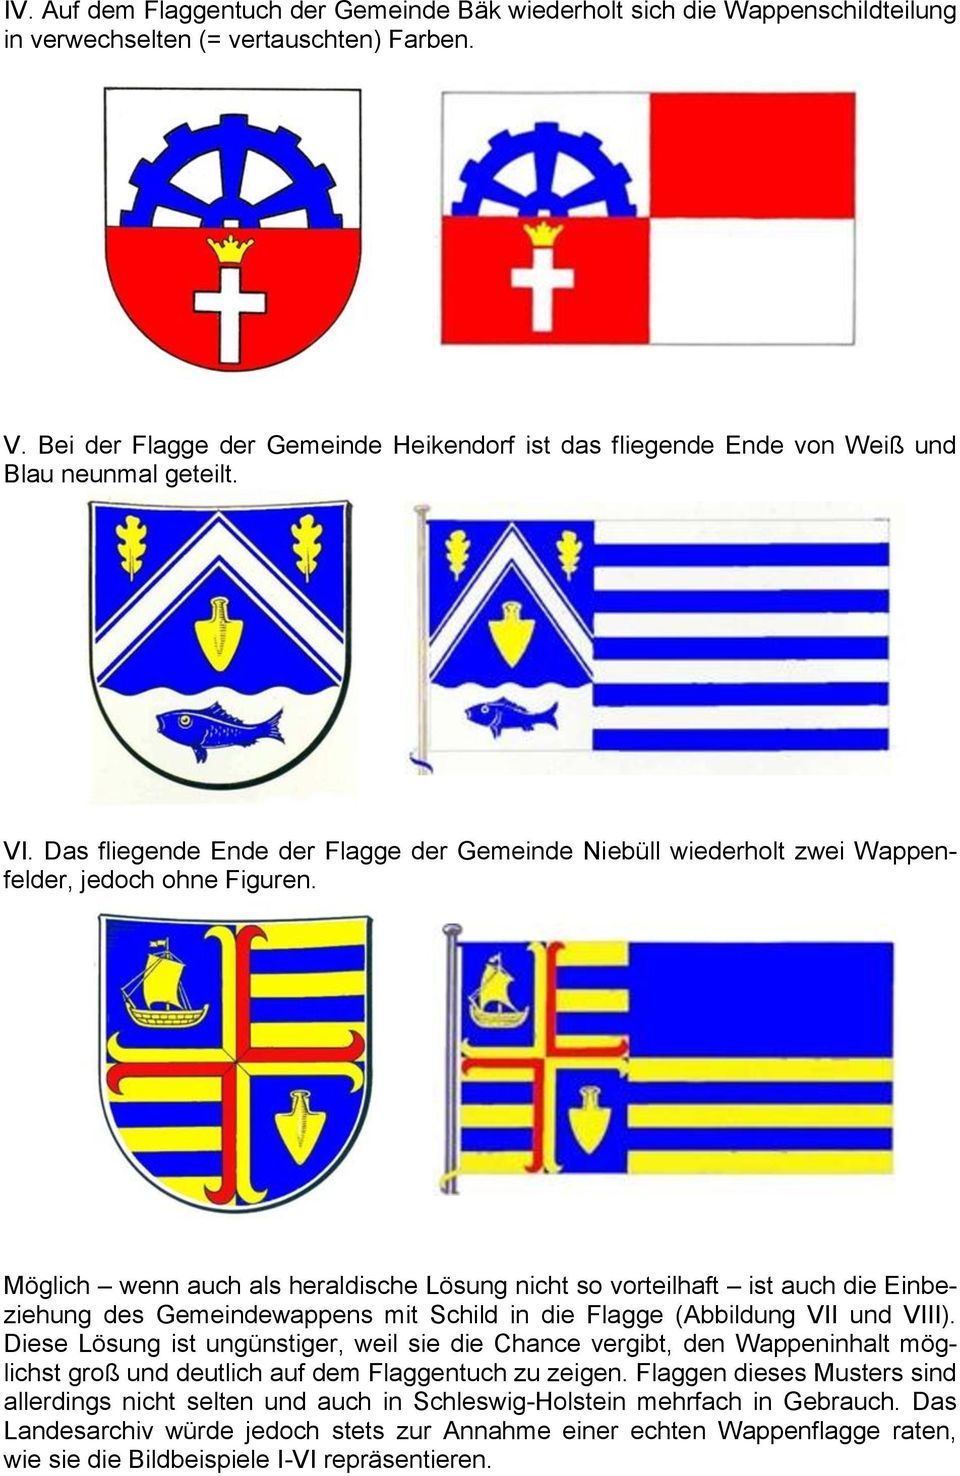 Das fliegende Ende der Flagge der Gemeinde Niebüll wiederholt zwei Wappenfelder, jedoch ohne Figuren.